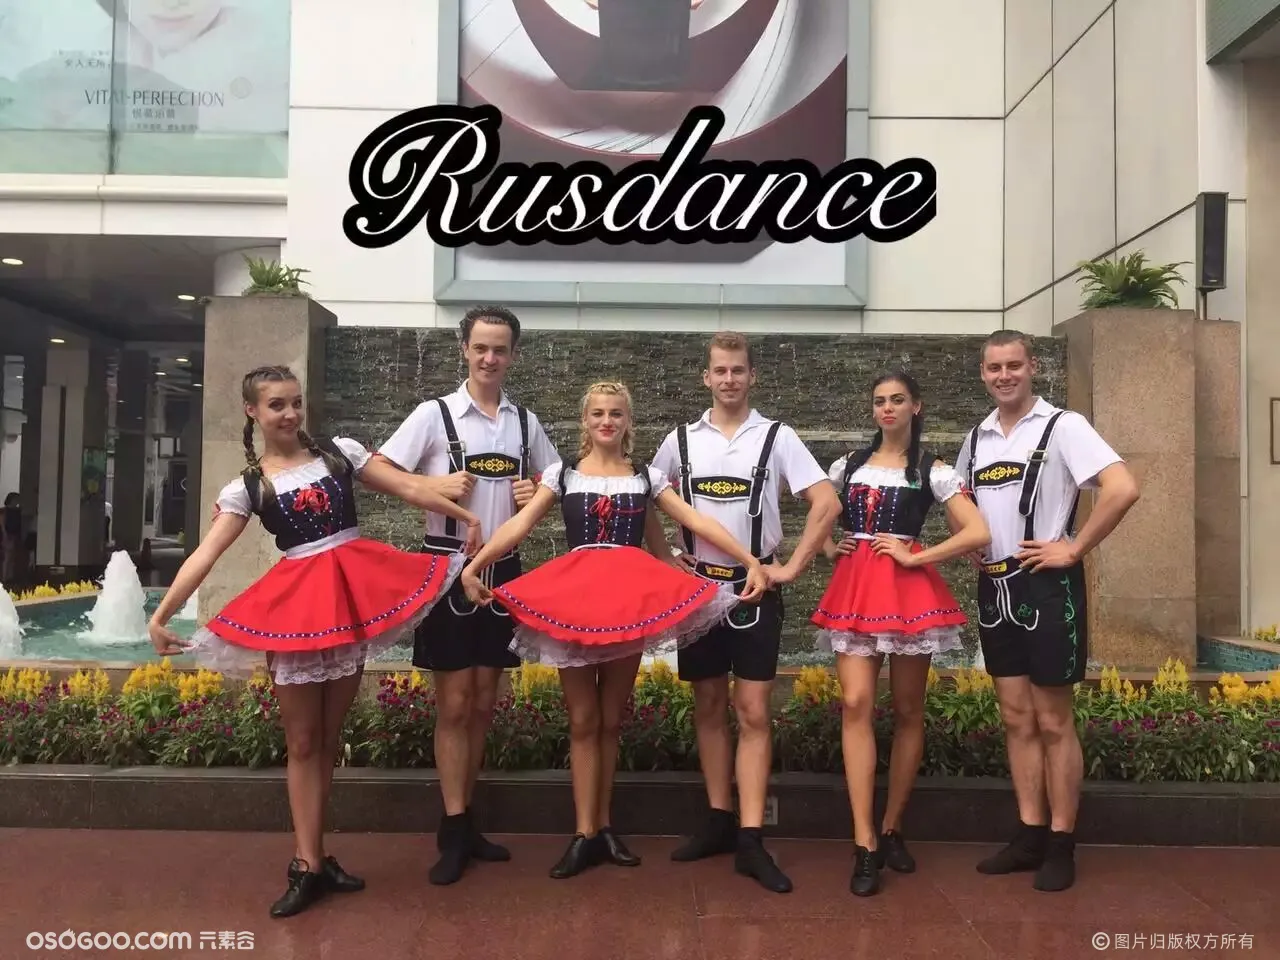 广东外籍舞蹈资源 德国风格舞蹈